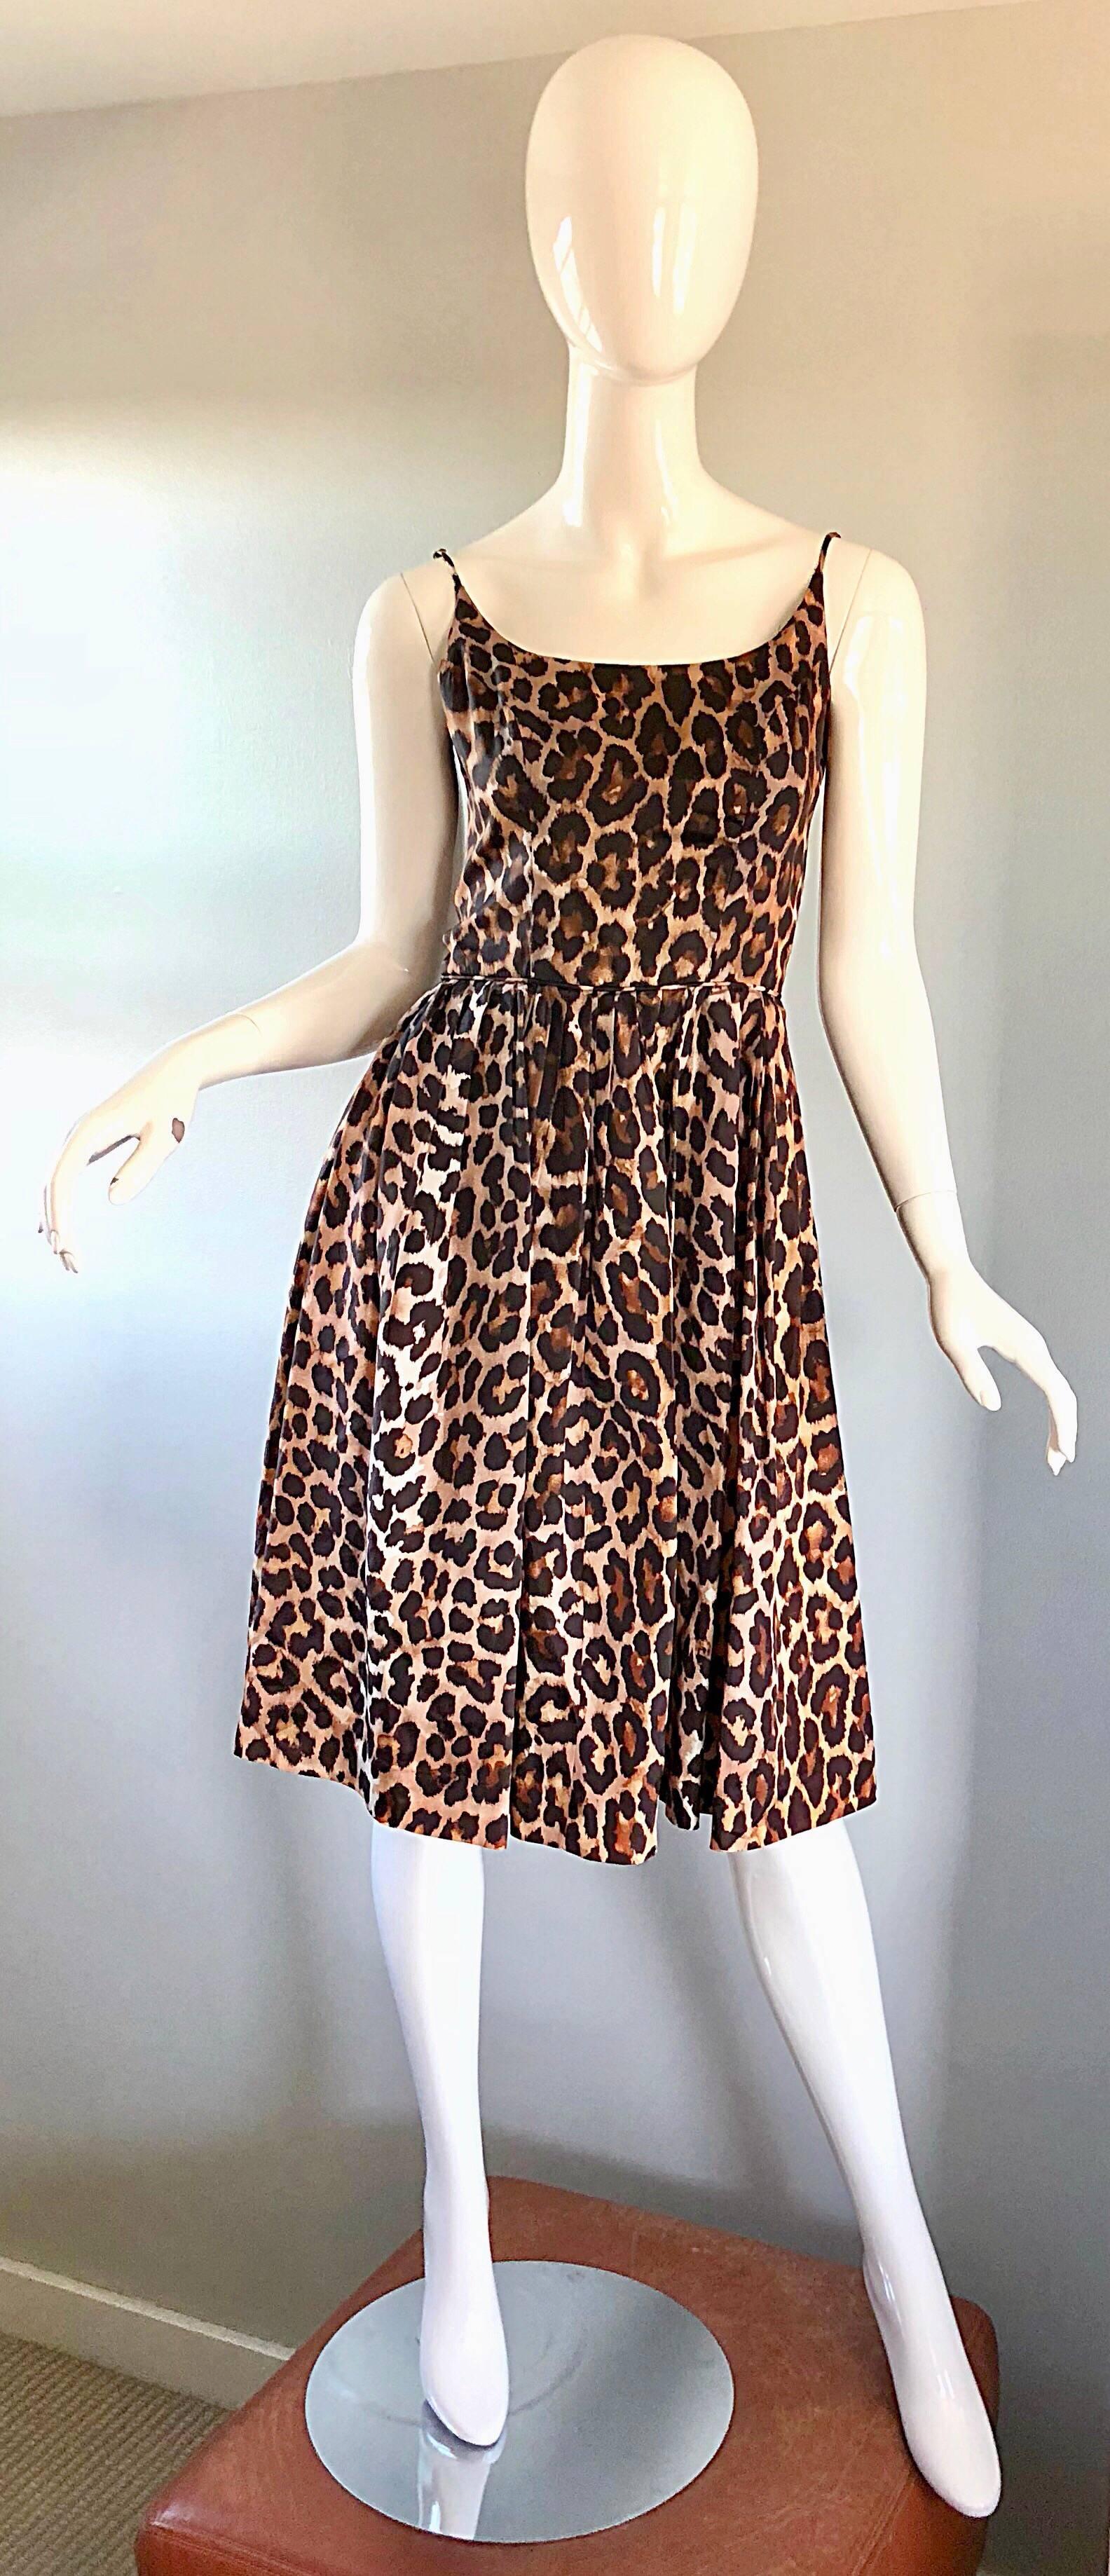 Wunderschöne Vintage 1950s demi Couture Leopard / Cheetah Druck fit und flare Seidenkleid! Dieses Kleid ist eine Bombe und eine klassische Schönheit! Mit Allover-Tierprint. Tailliertes Mieder mit ausladendem Rockteil. Durchgehender